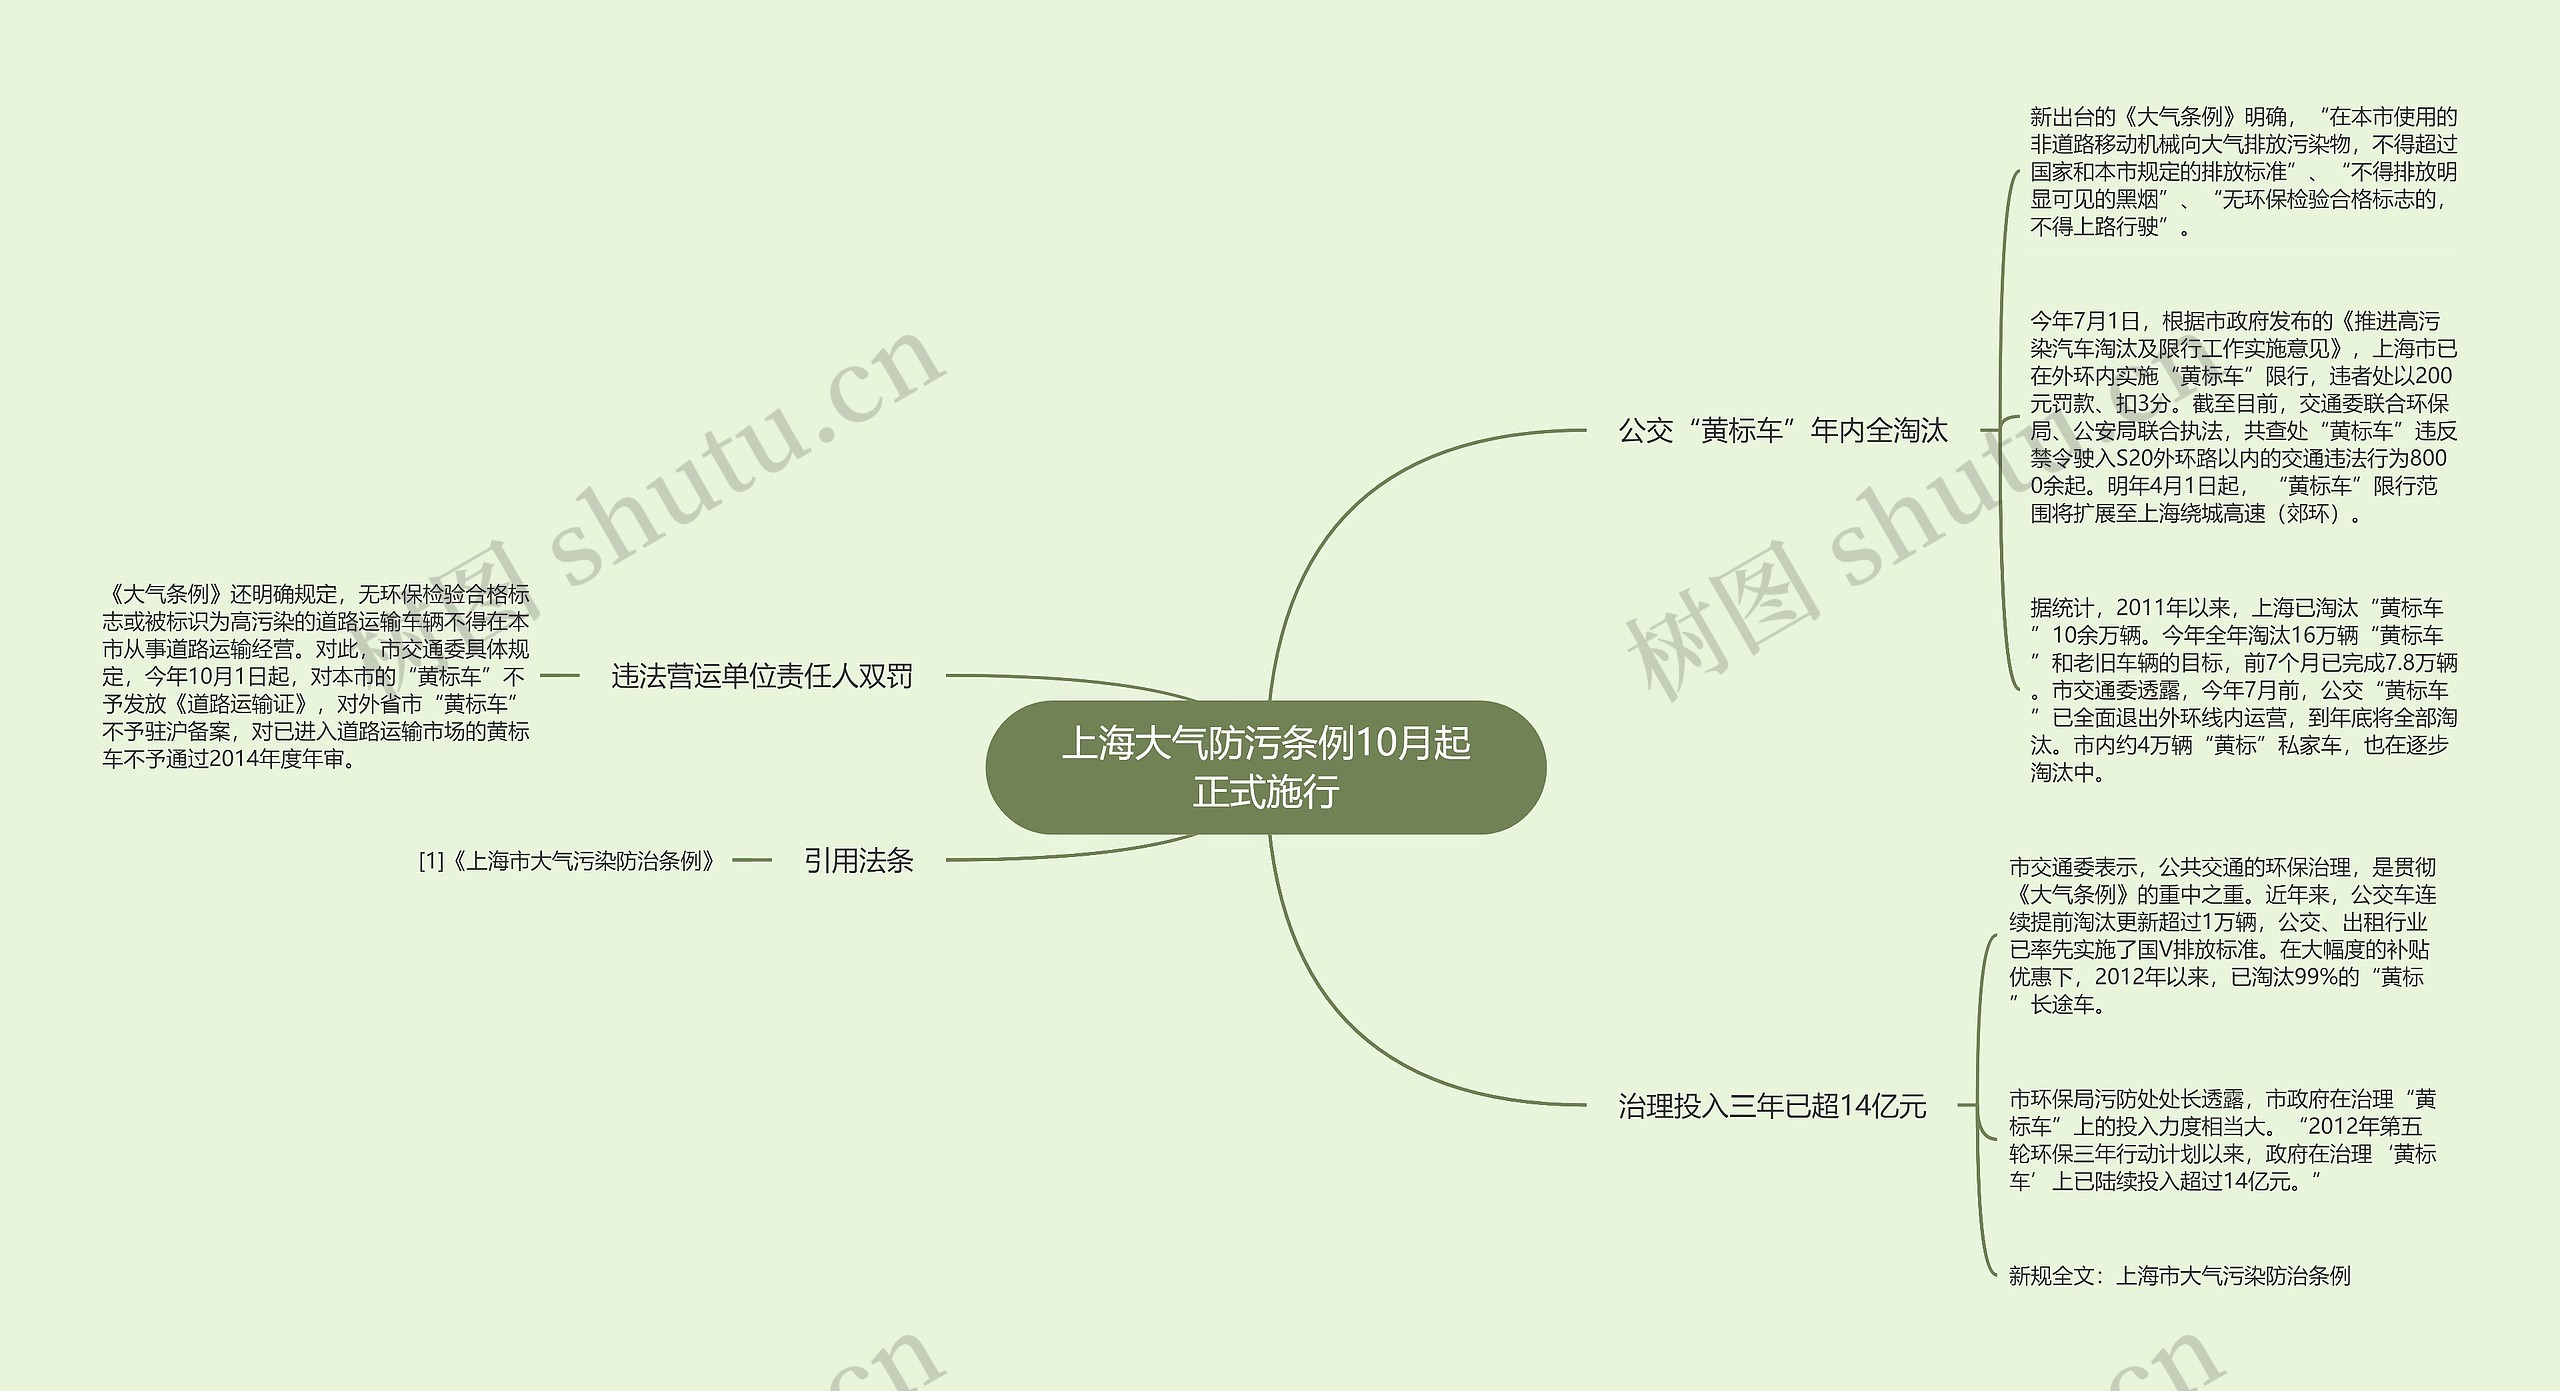 上海大气防污条例10月起正式施行